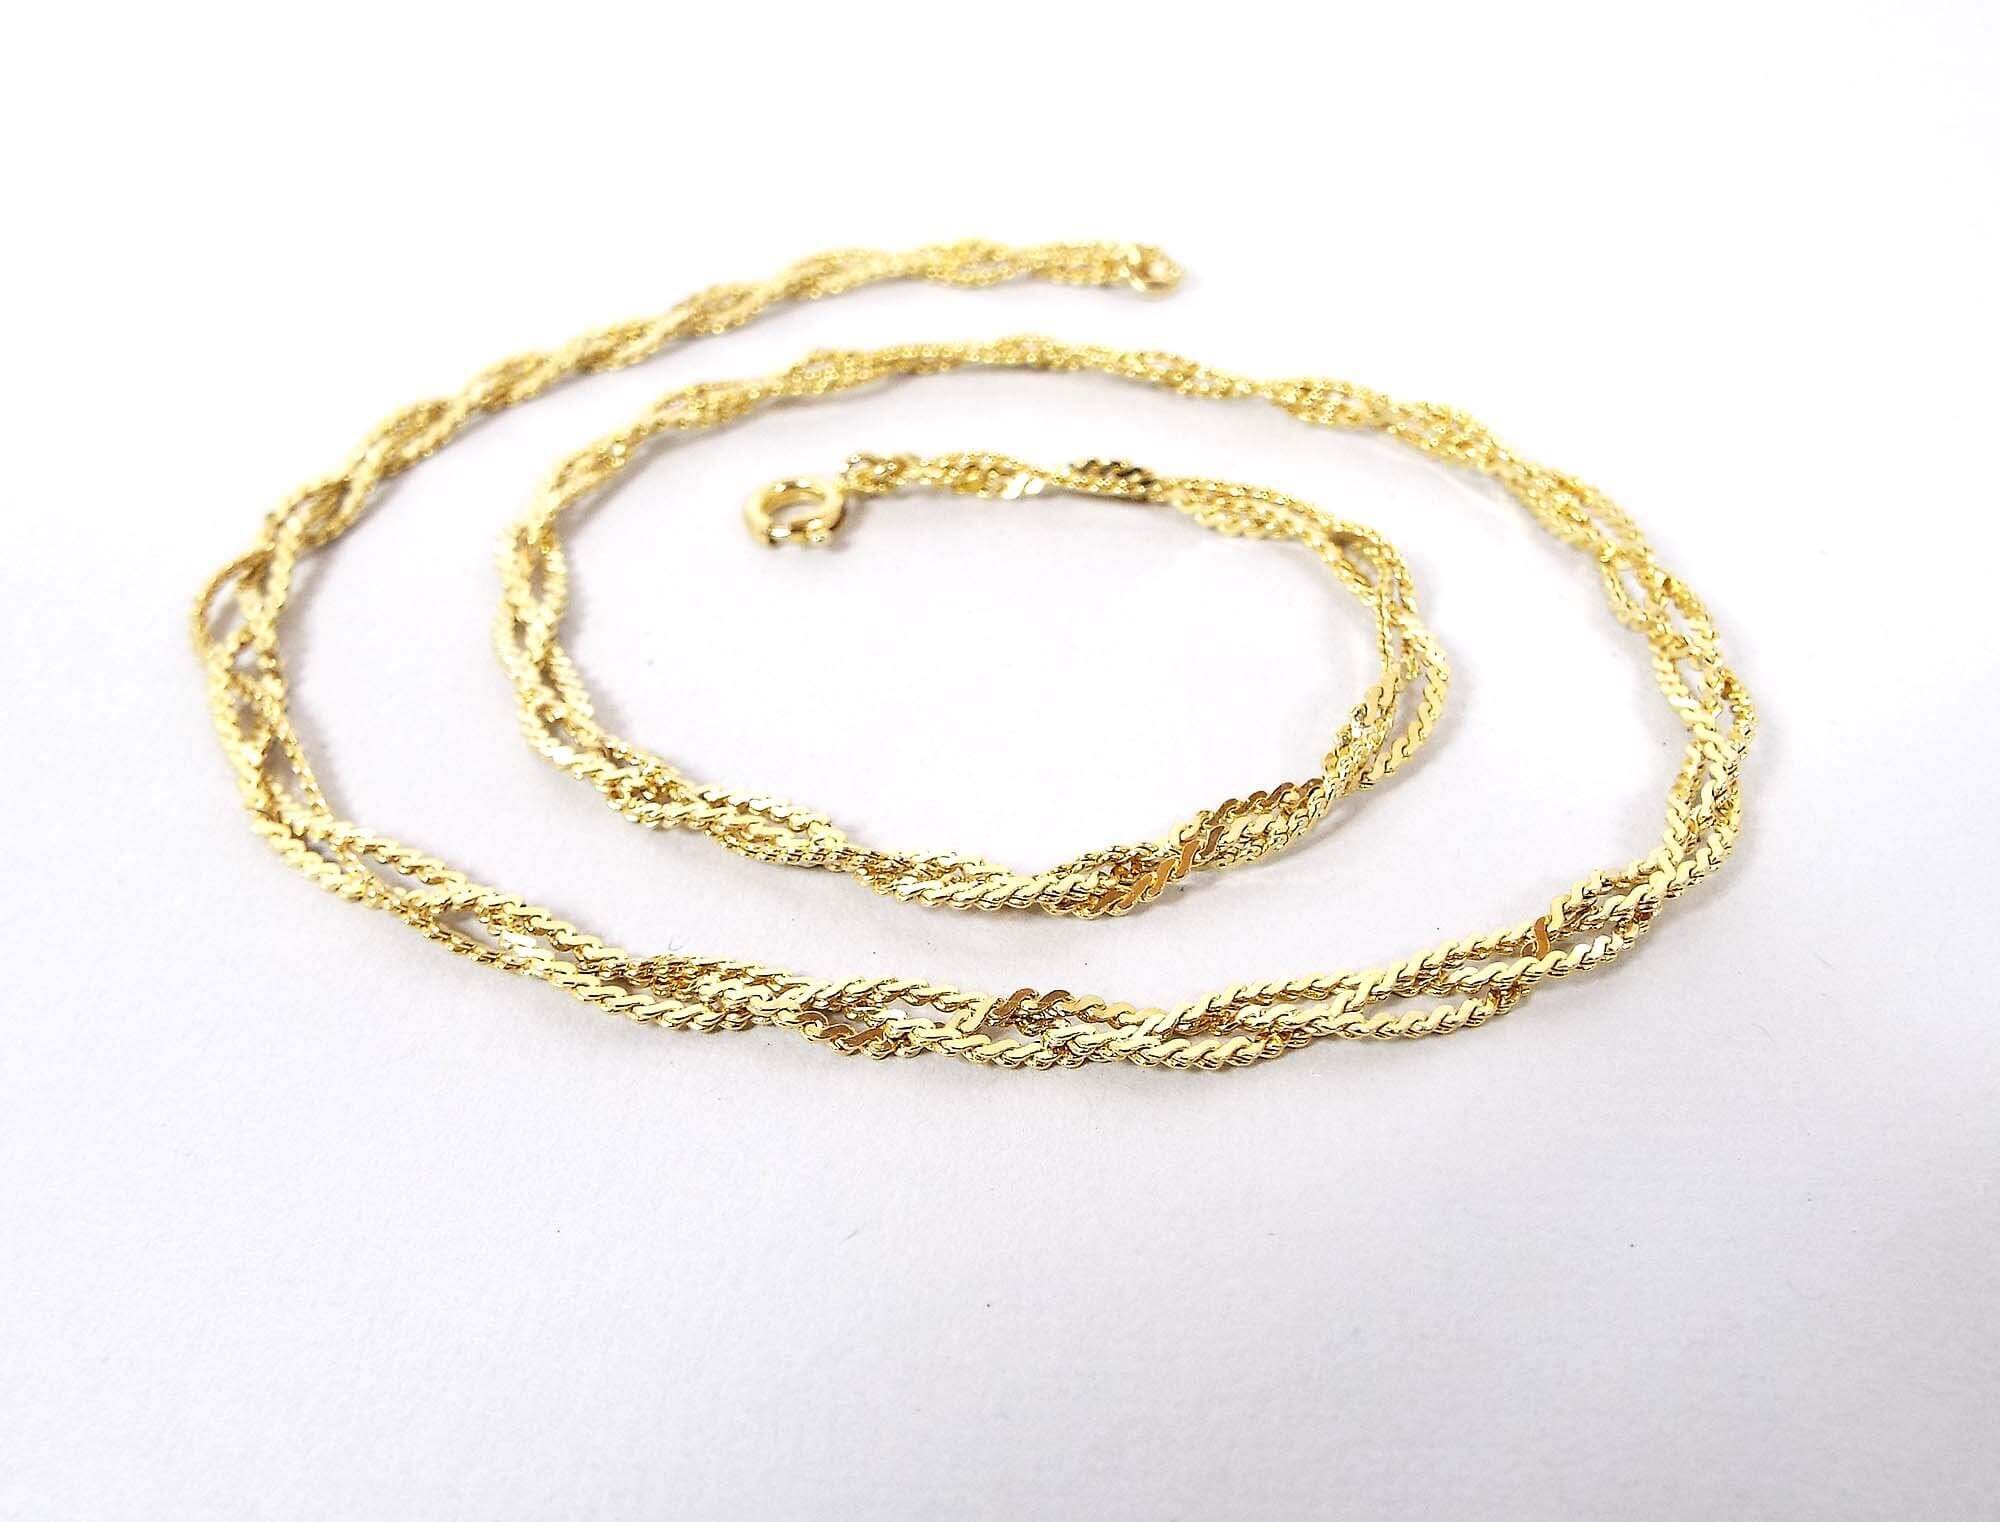 Multi Strand Twist Braided Vintage Serpentine Chain Necklace